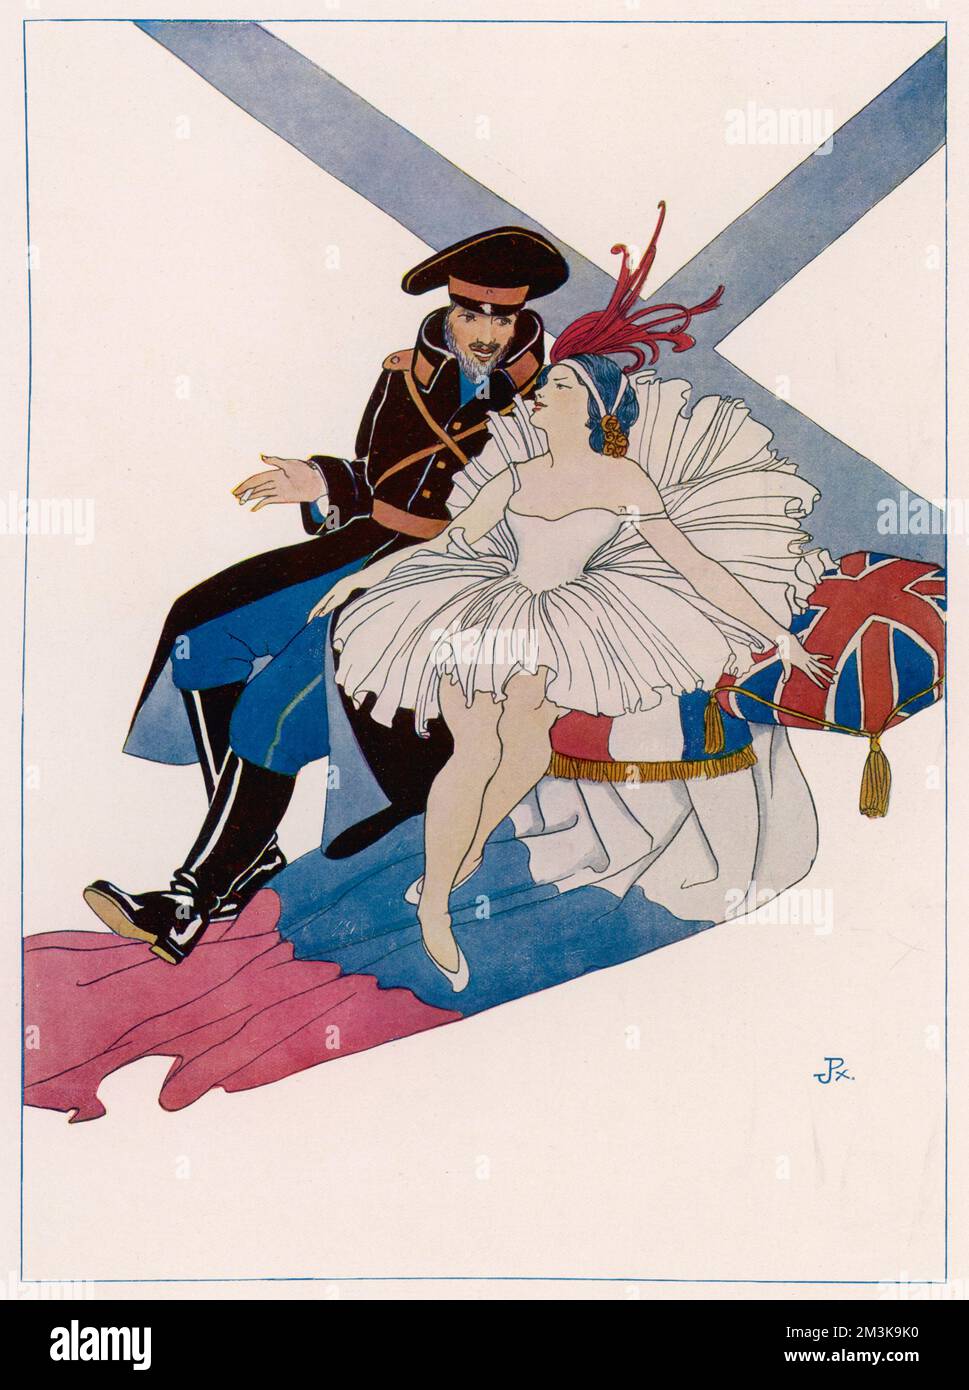 Ein bärtiger russischer Soldat, der einen schweren Mantel und glänzende Stiefel trägt, unterhält sich mit einer anmutigen Ballerina vor dem Hintergrund der Flagge seines Landes. Datum: 1914 Stockfoto